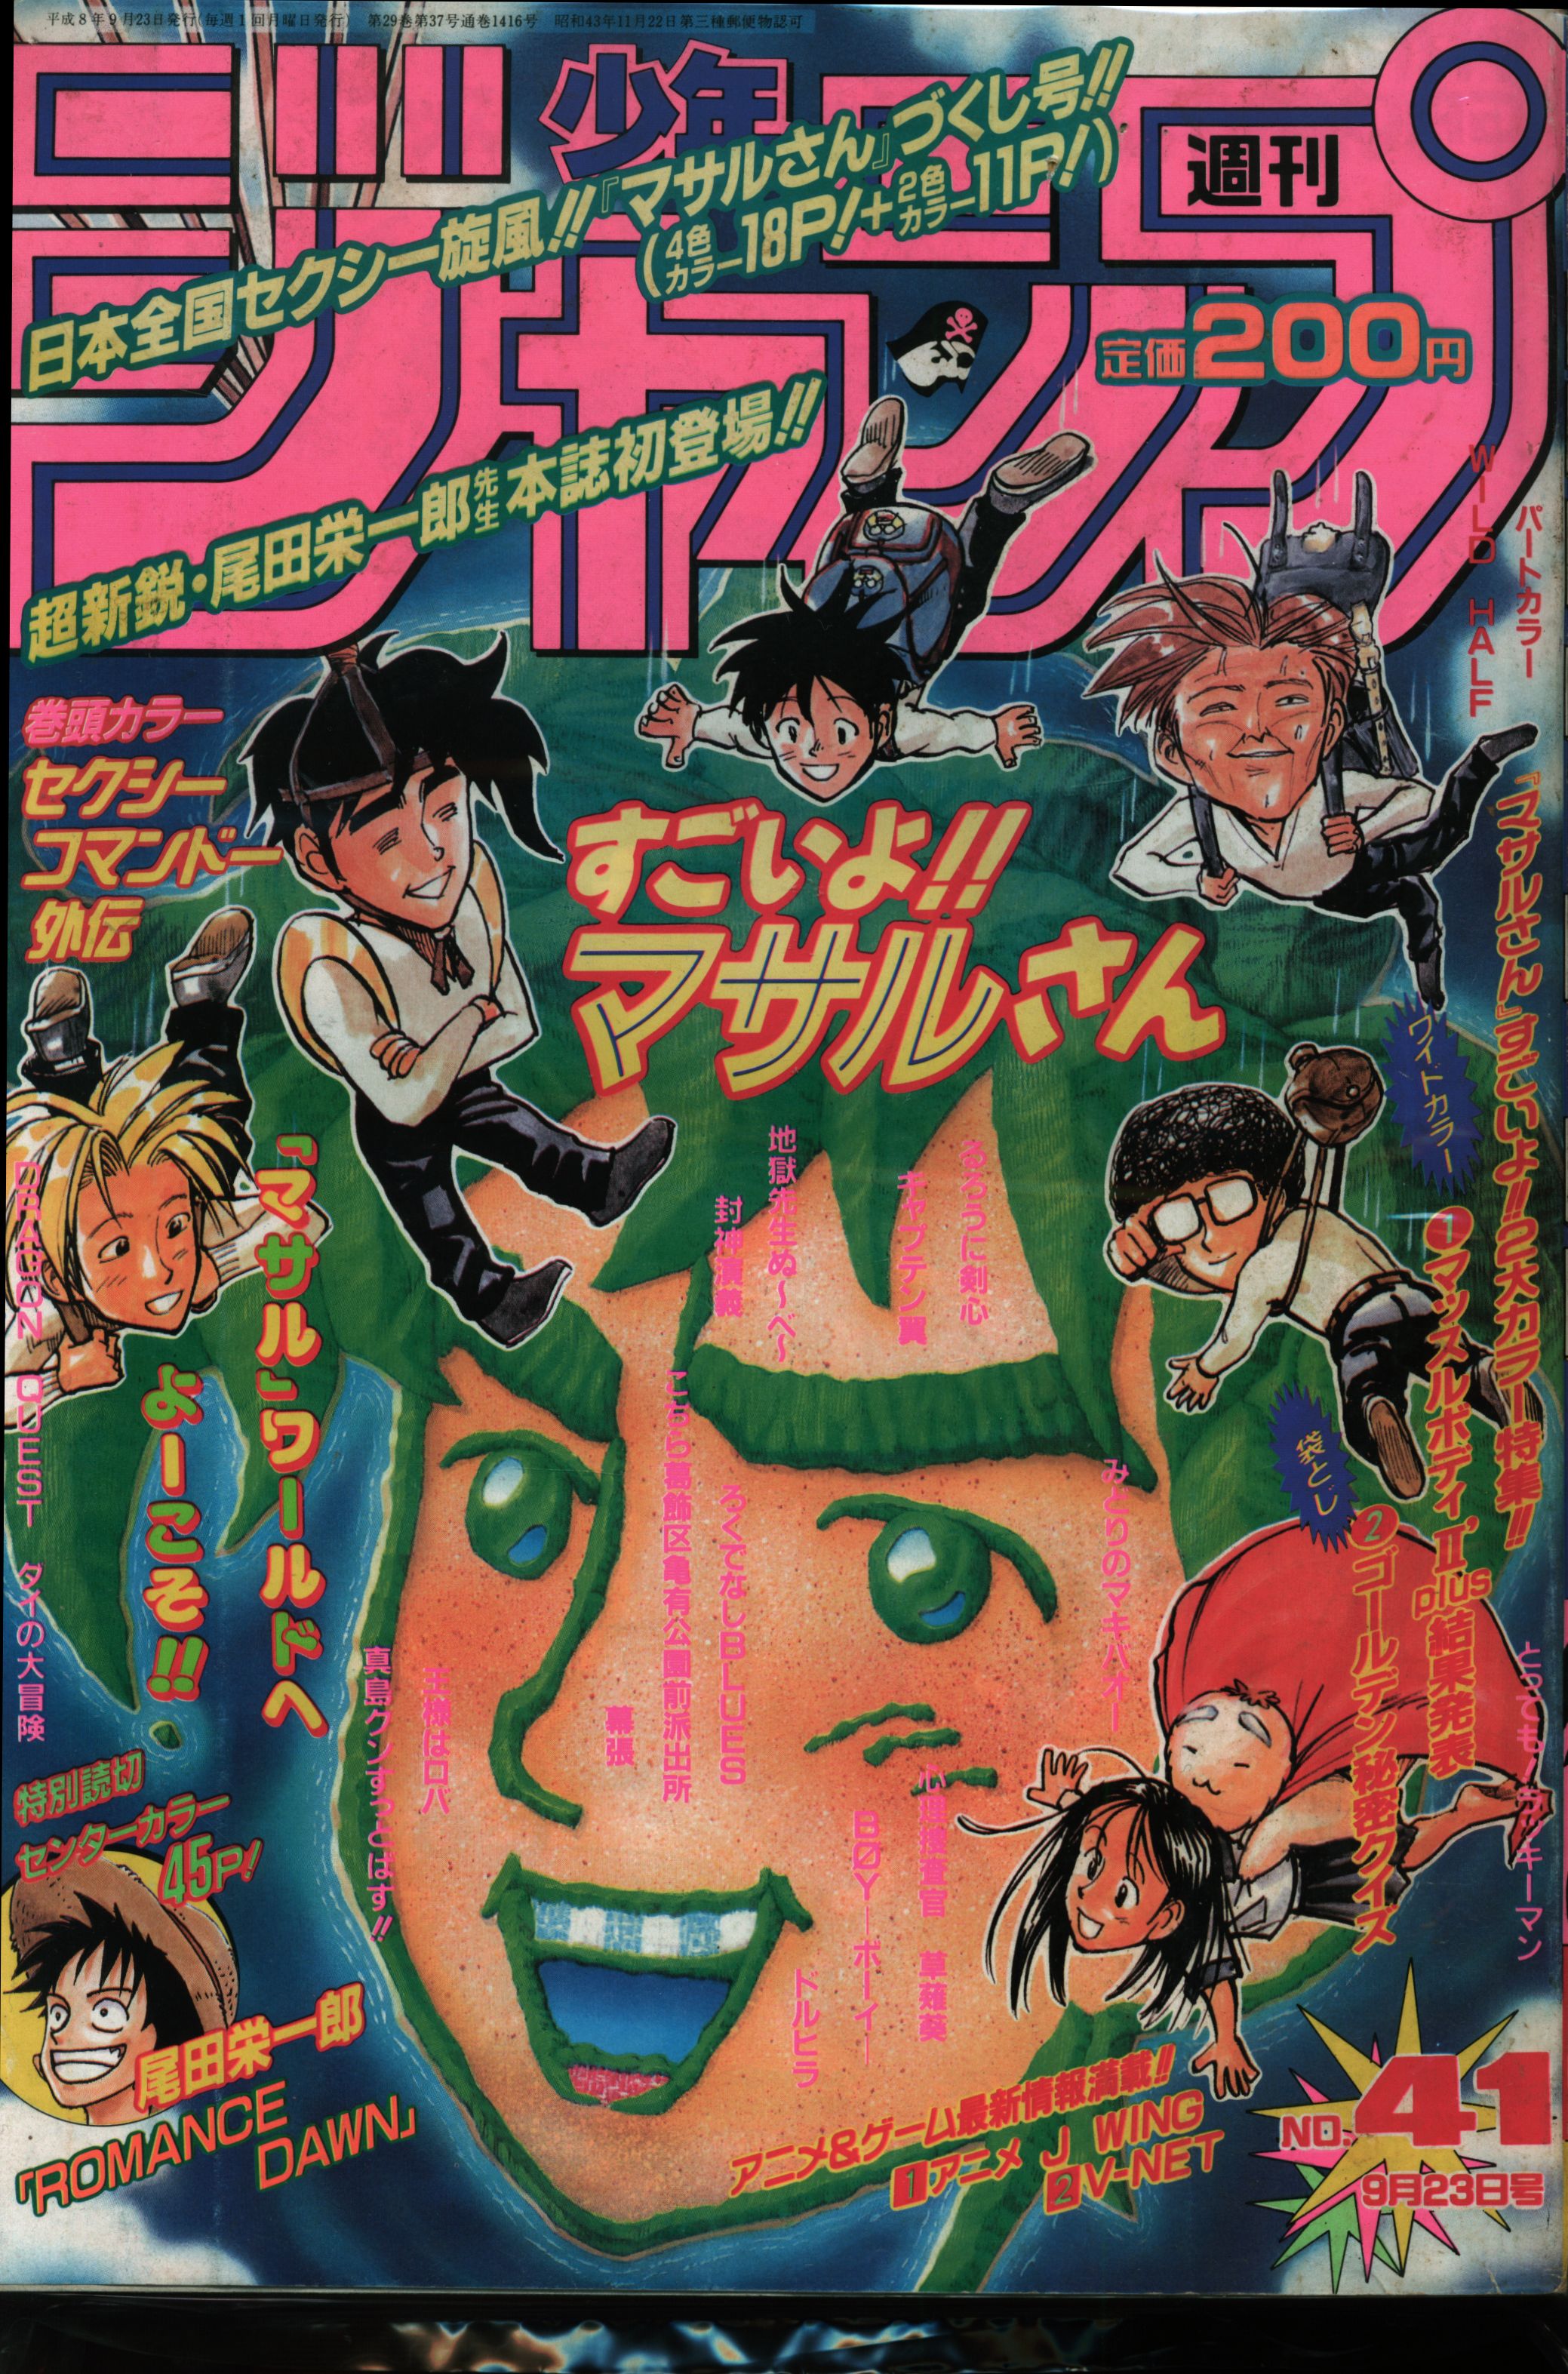 集英社 1996年(平成8年)の漫画雑誌 週刊少年ジャンプ1996年(平成8年)41